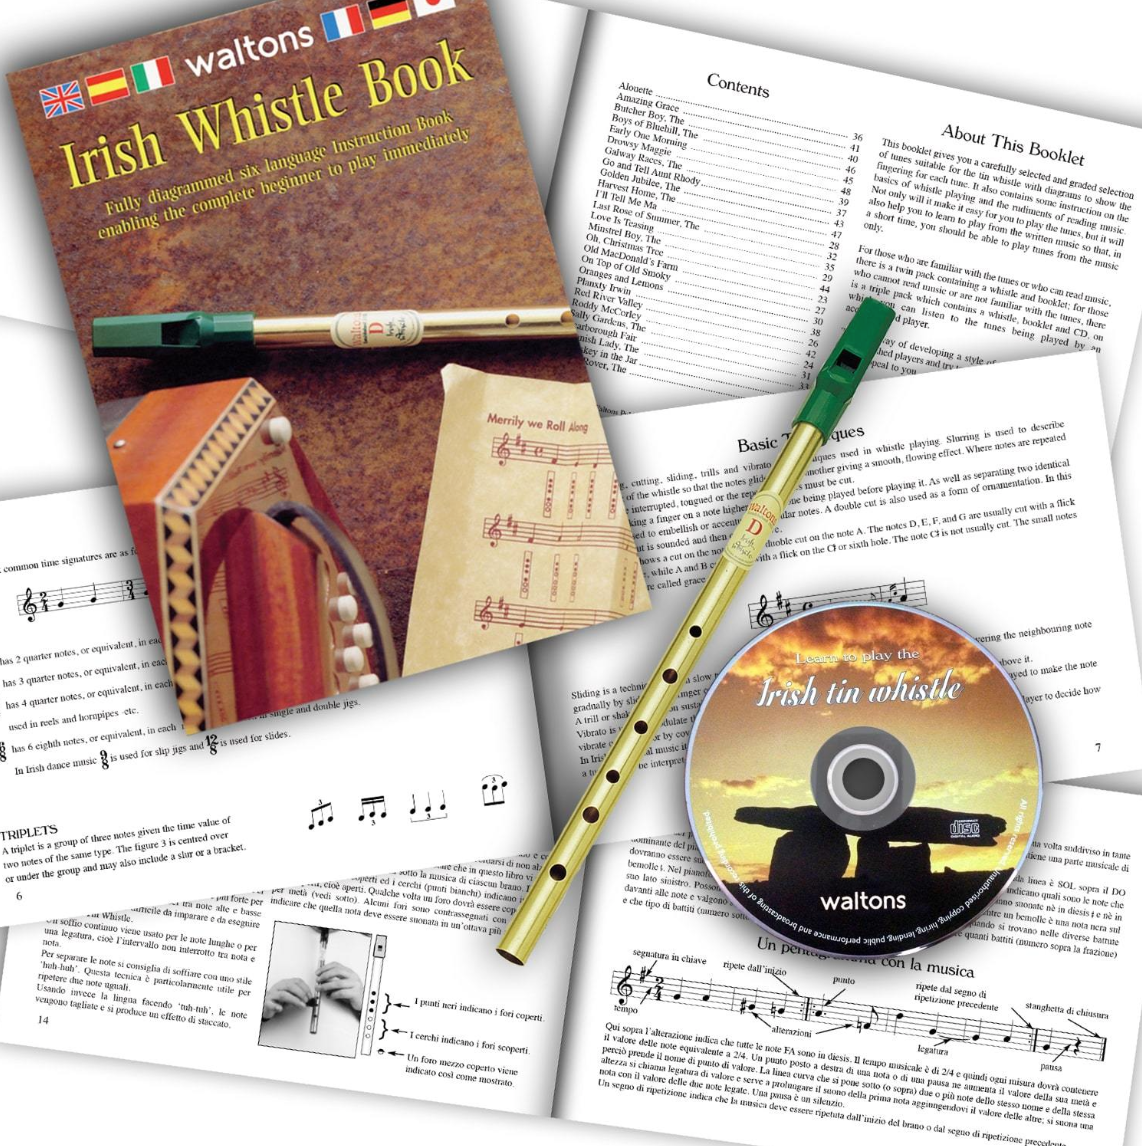 Irish Tin Whistle | CD Pack